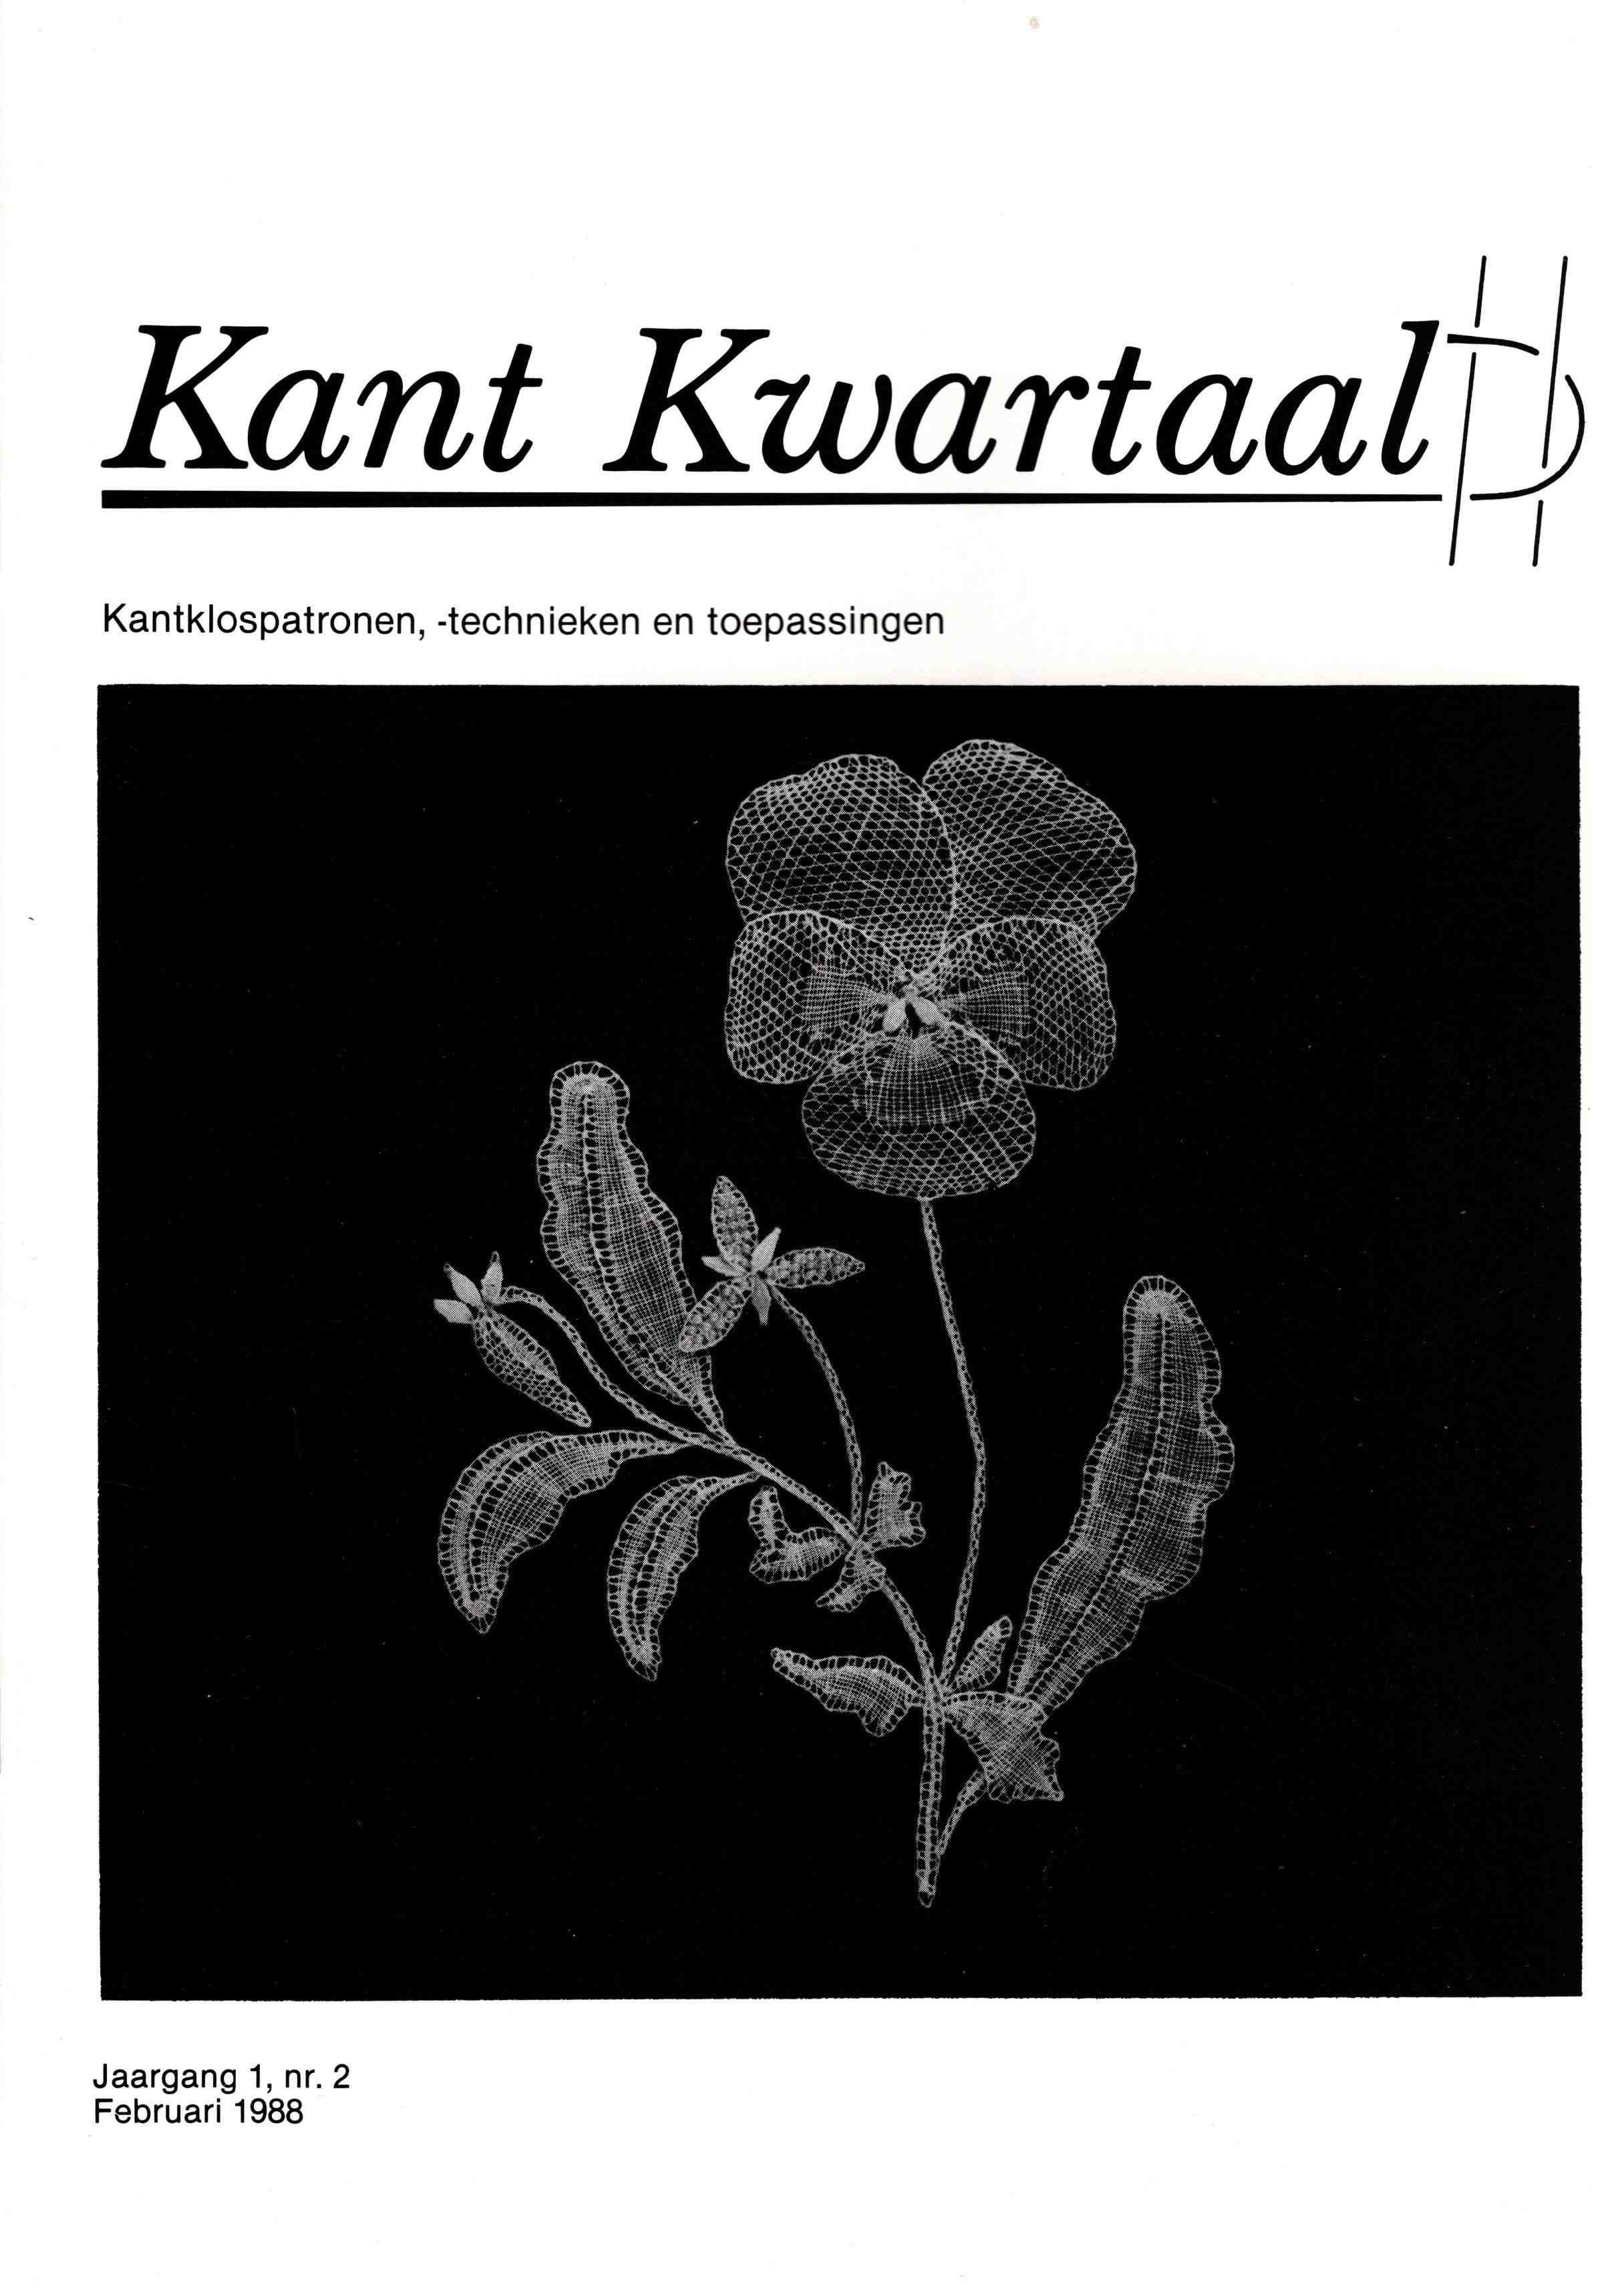 Kant Kwartaal Jahrgang 1 Nr. 2